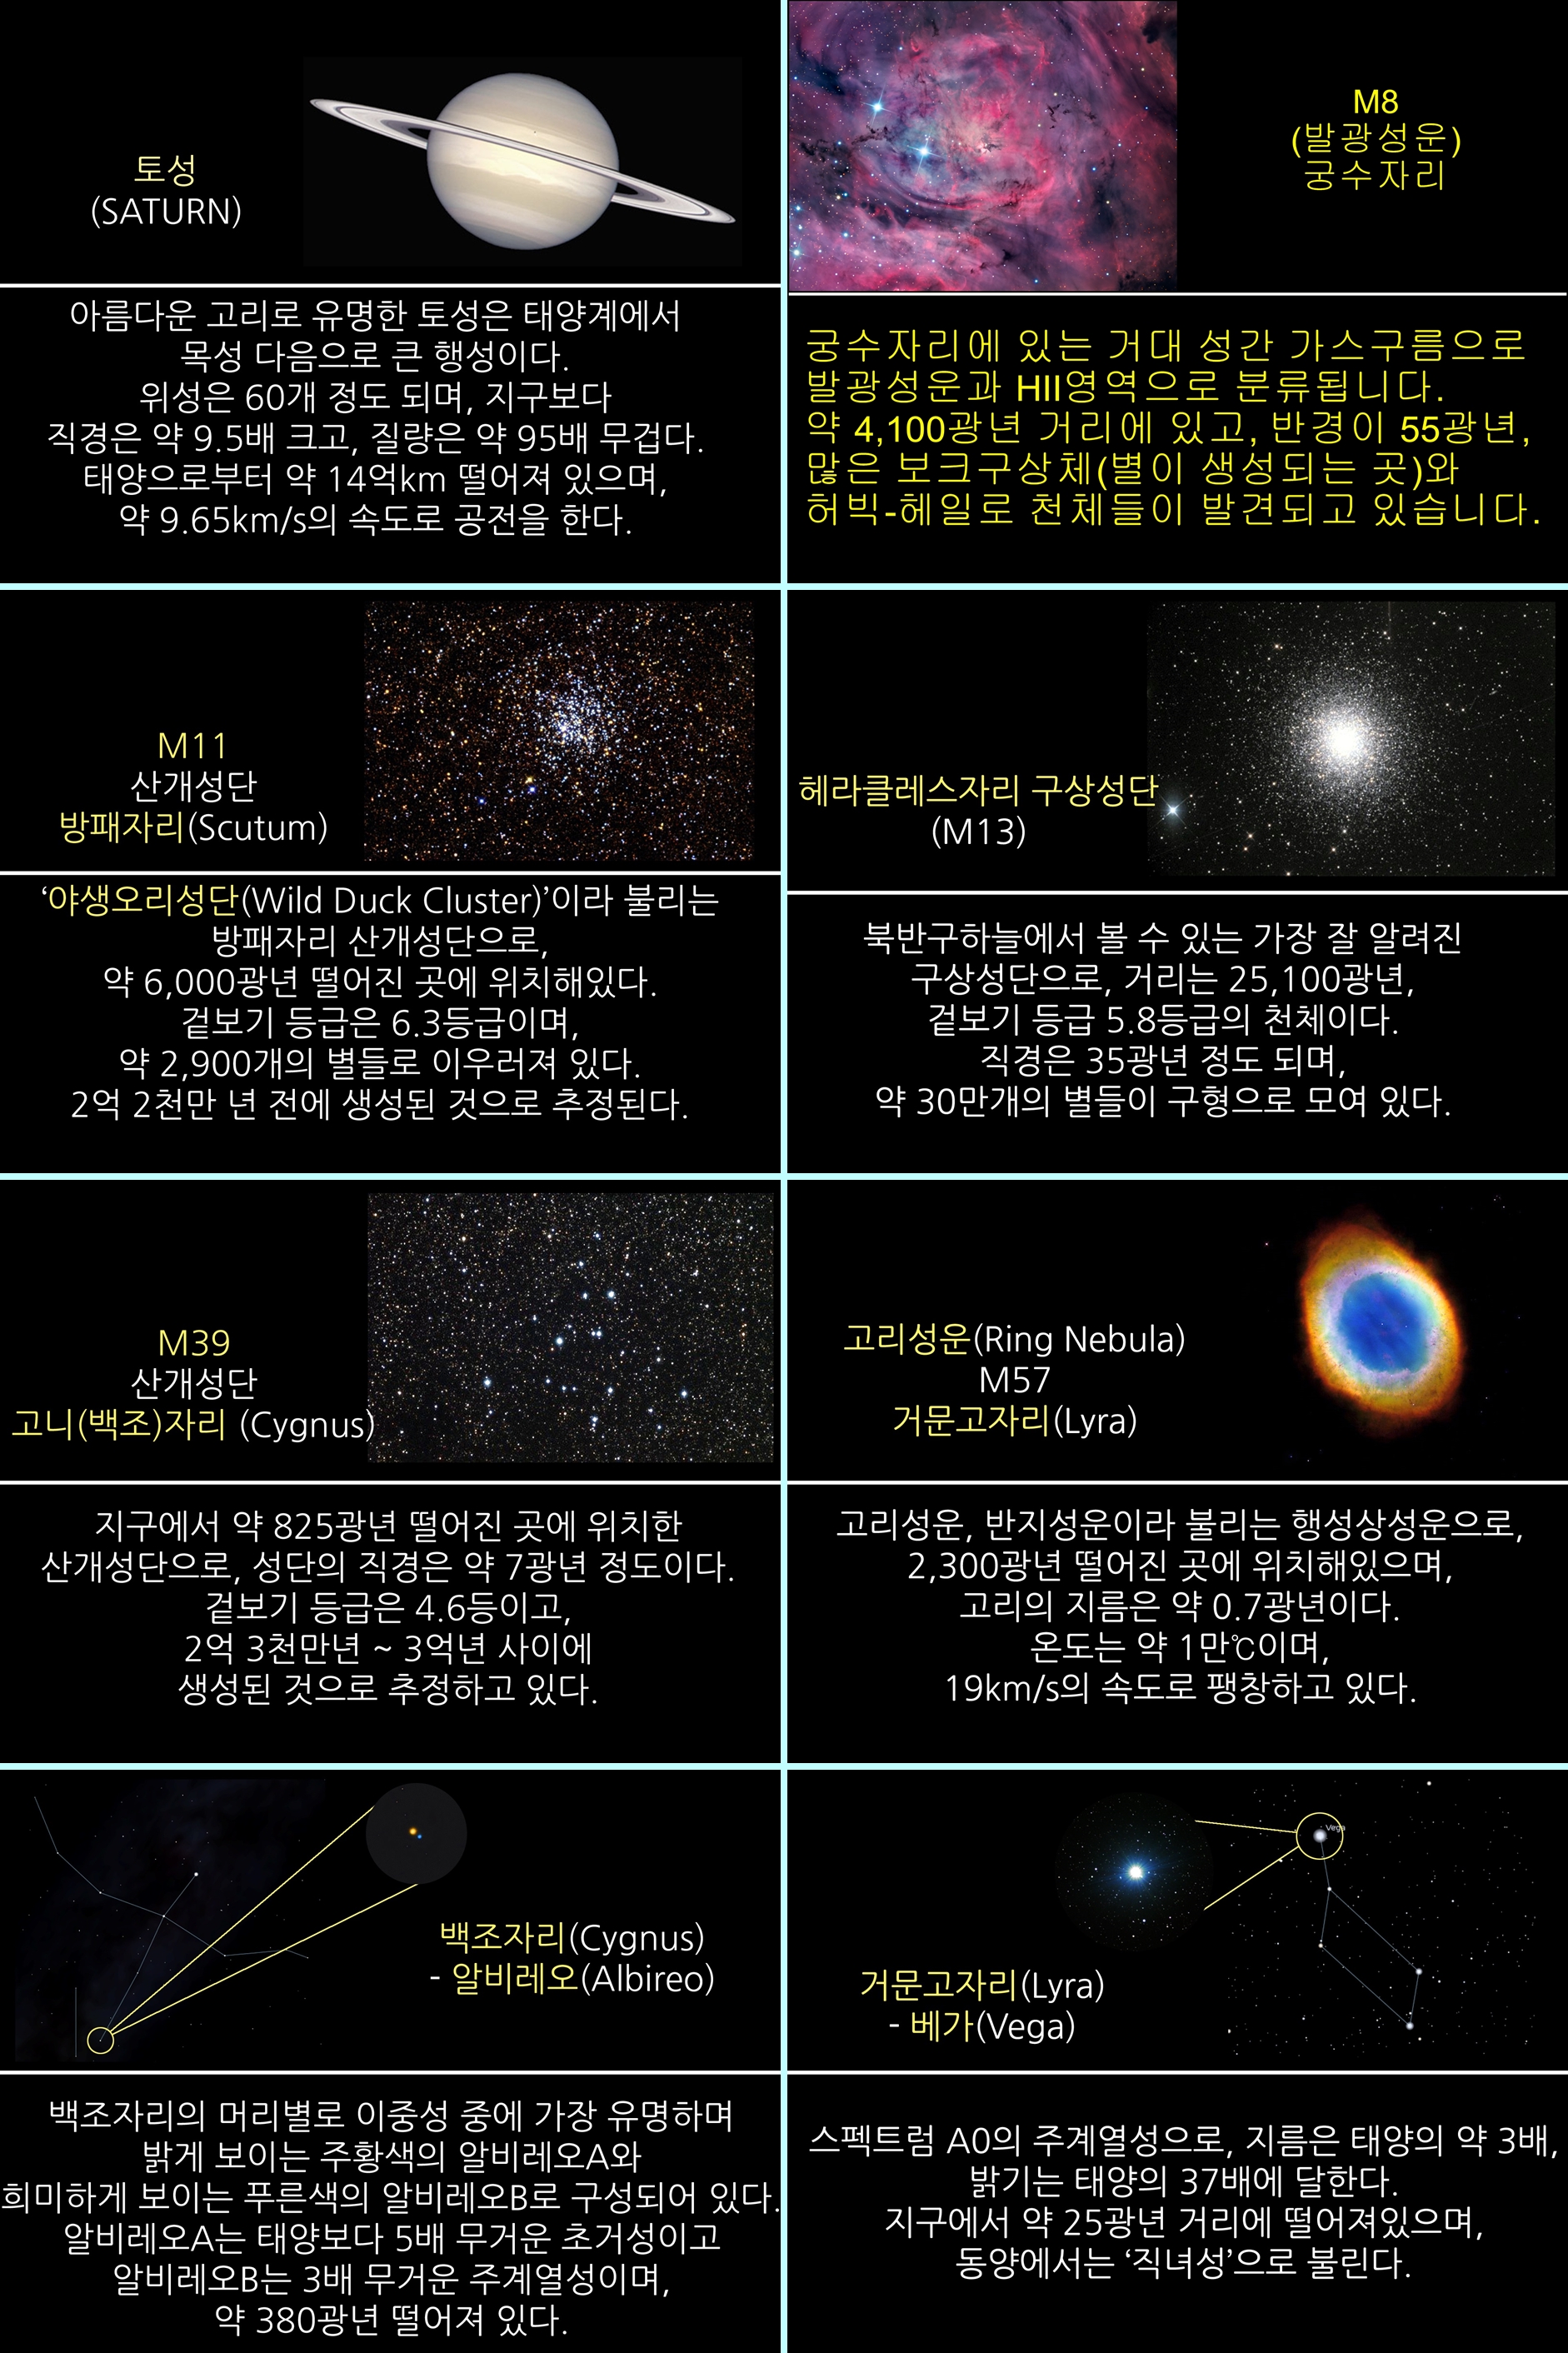 2015년 8월 주요 천체관측 대상